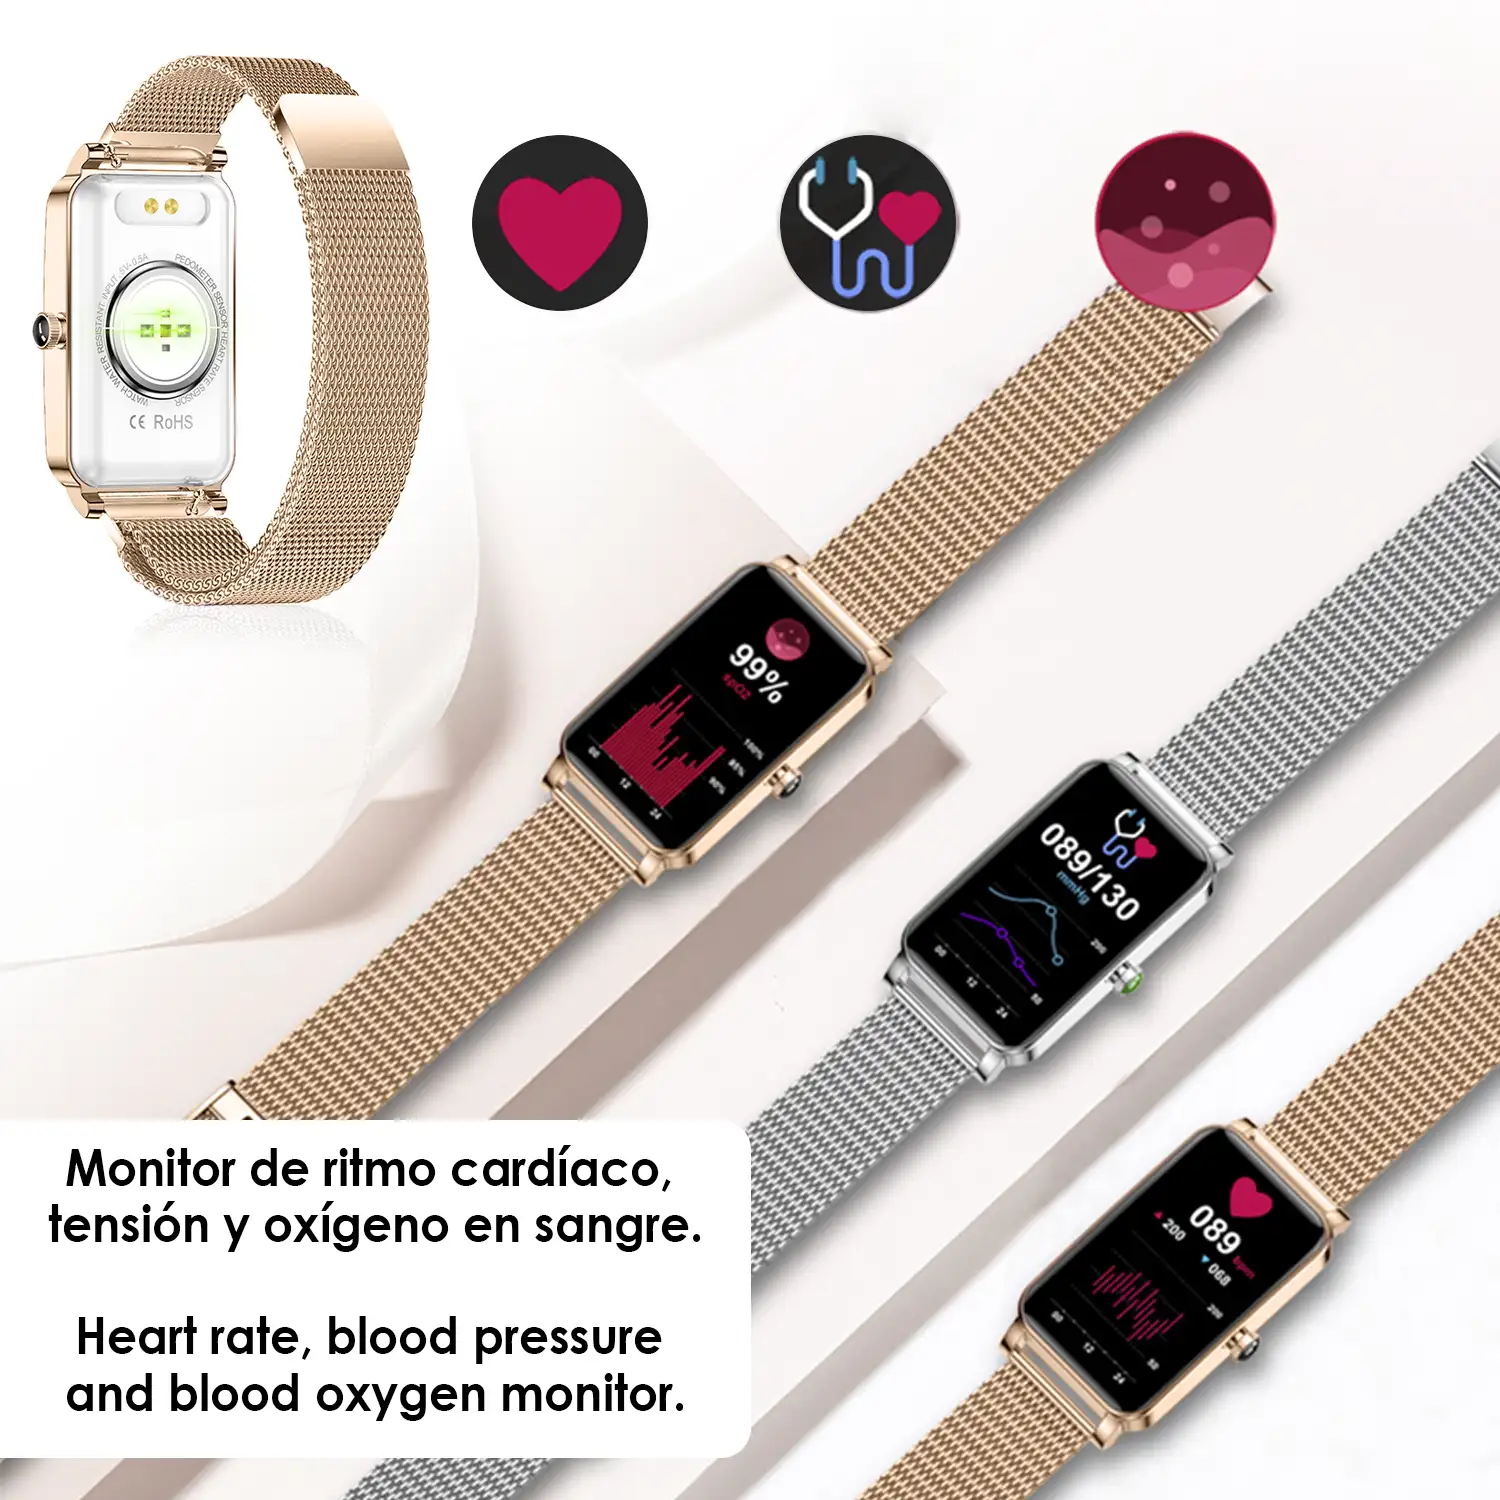 Smartwatch deportivo especial femenino ZX19. 12 modos deportivos, monitor cardiaco, O2 en sangre y de tensión.